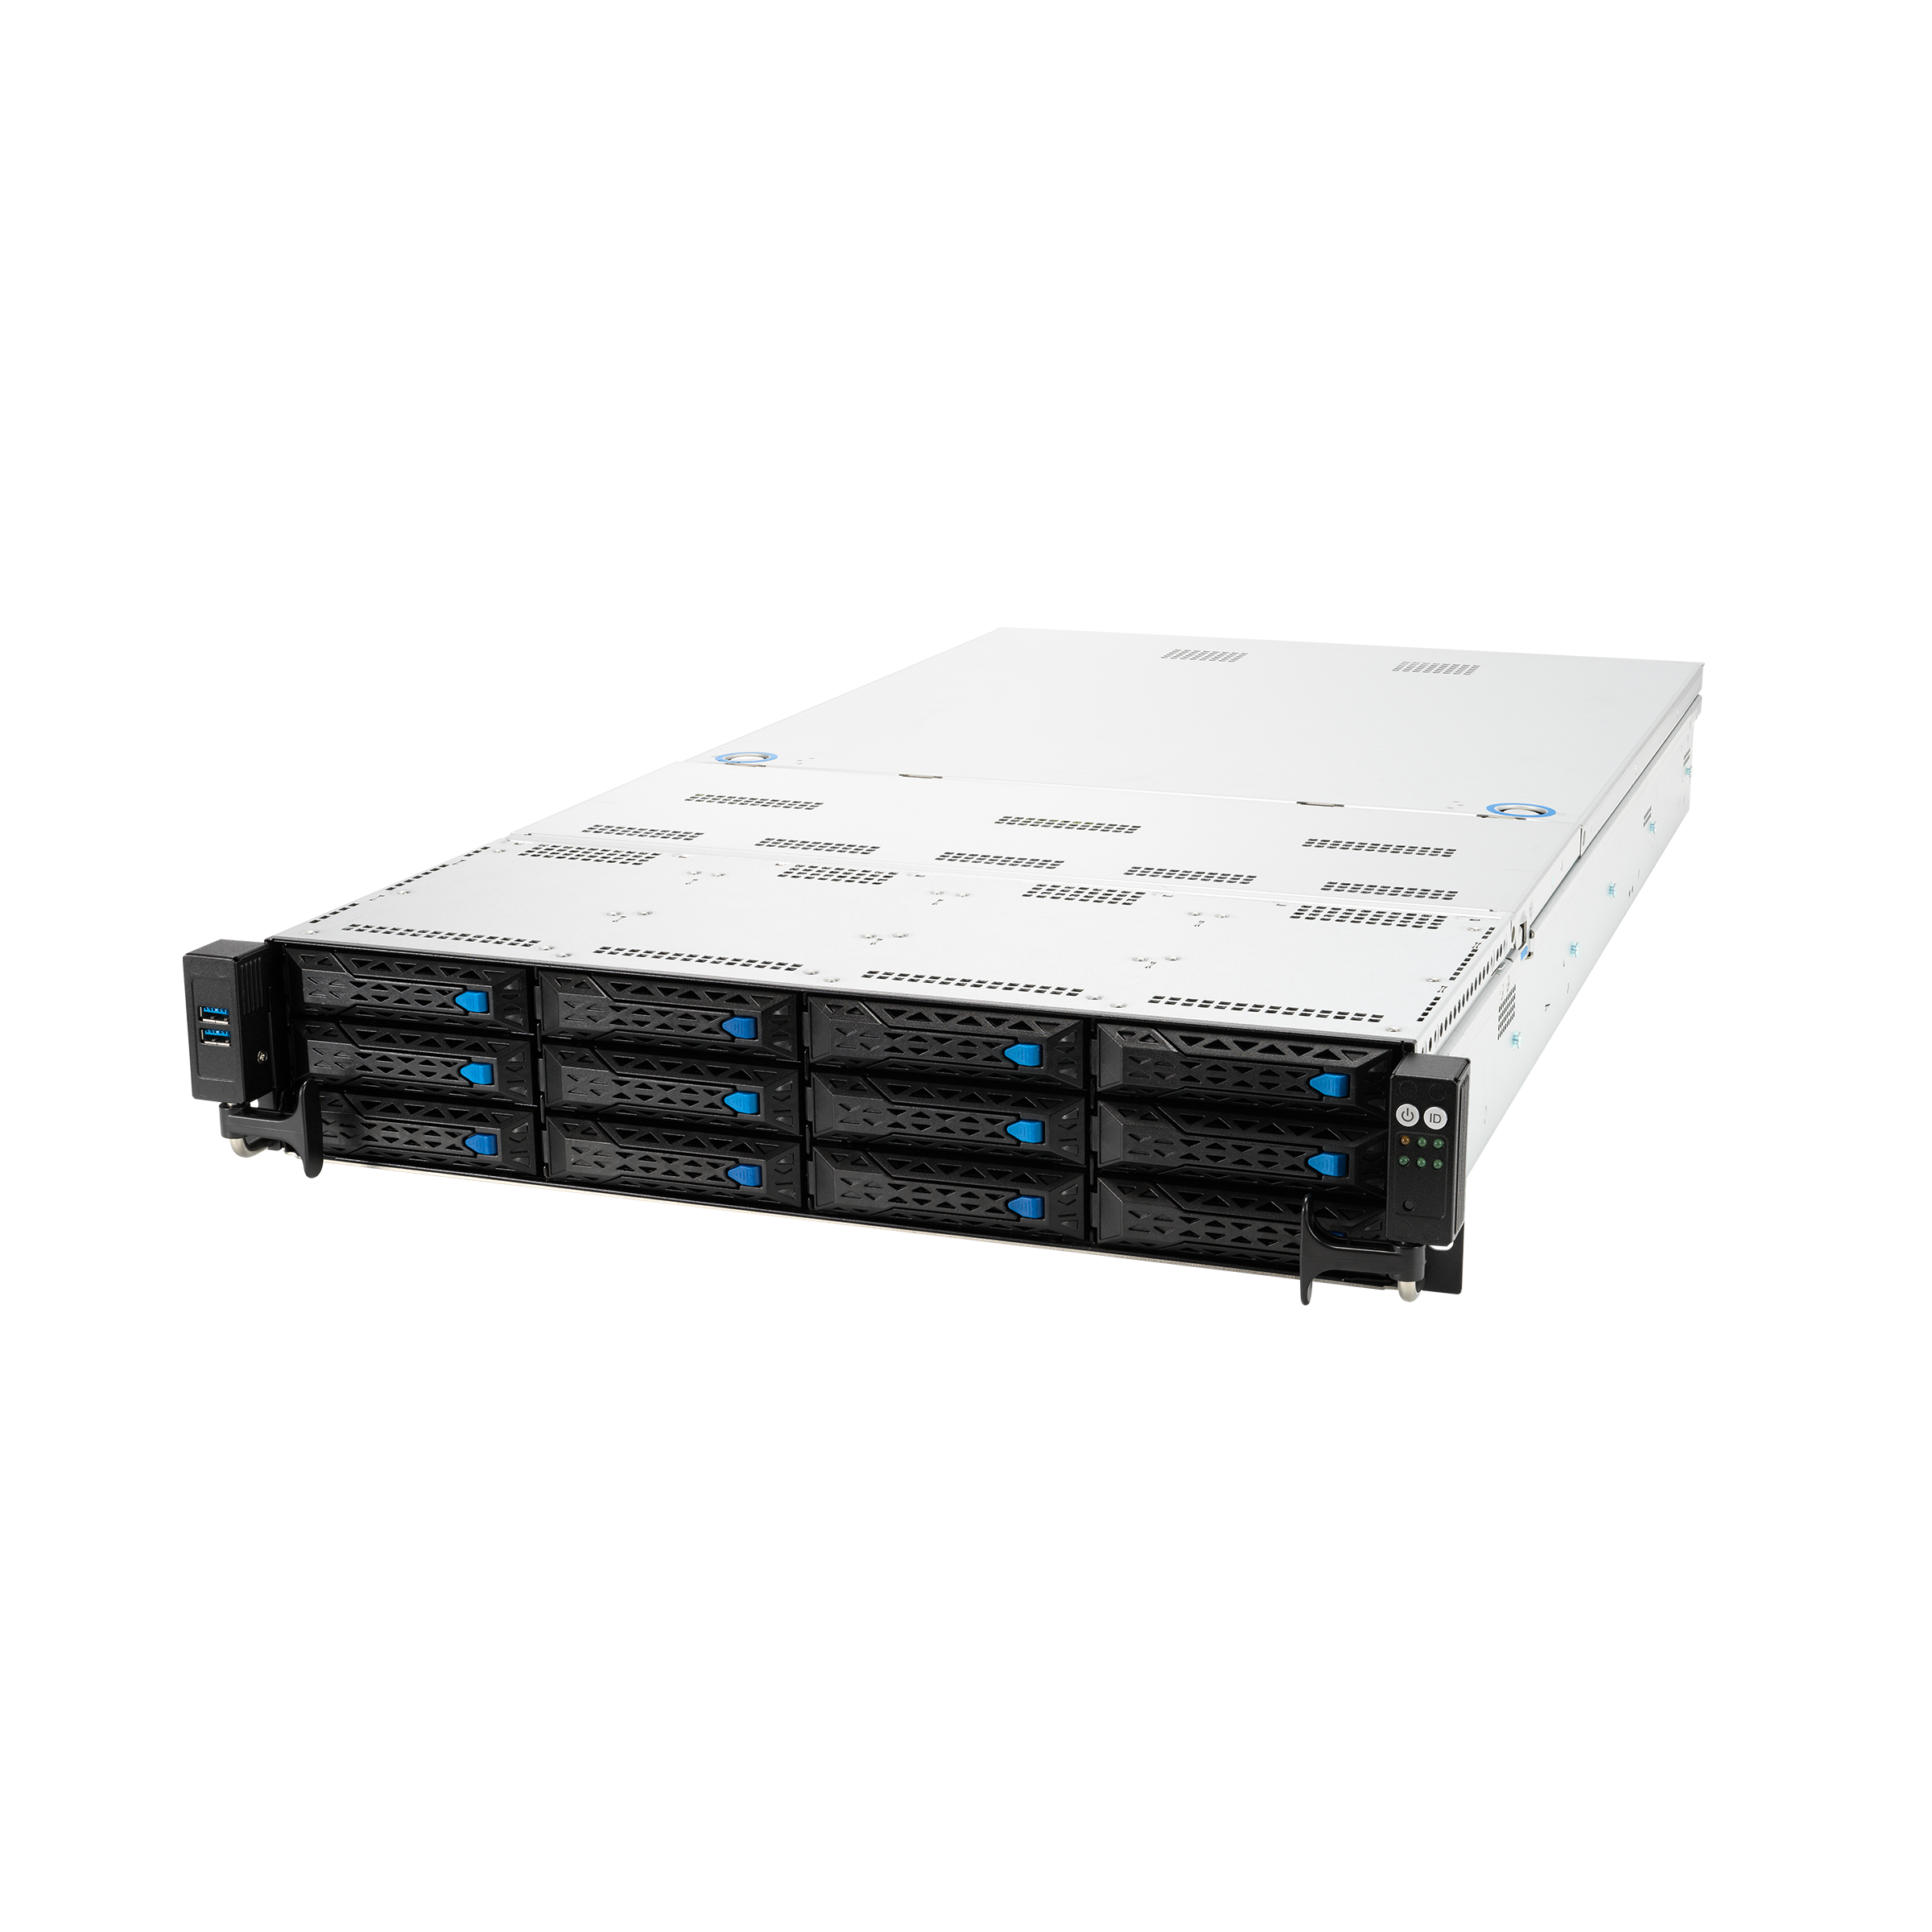 Серверная платформа ASUS RS520A-E11-RS12U (90SF01Q2-M00270)